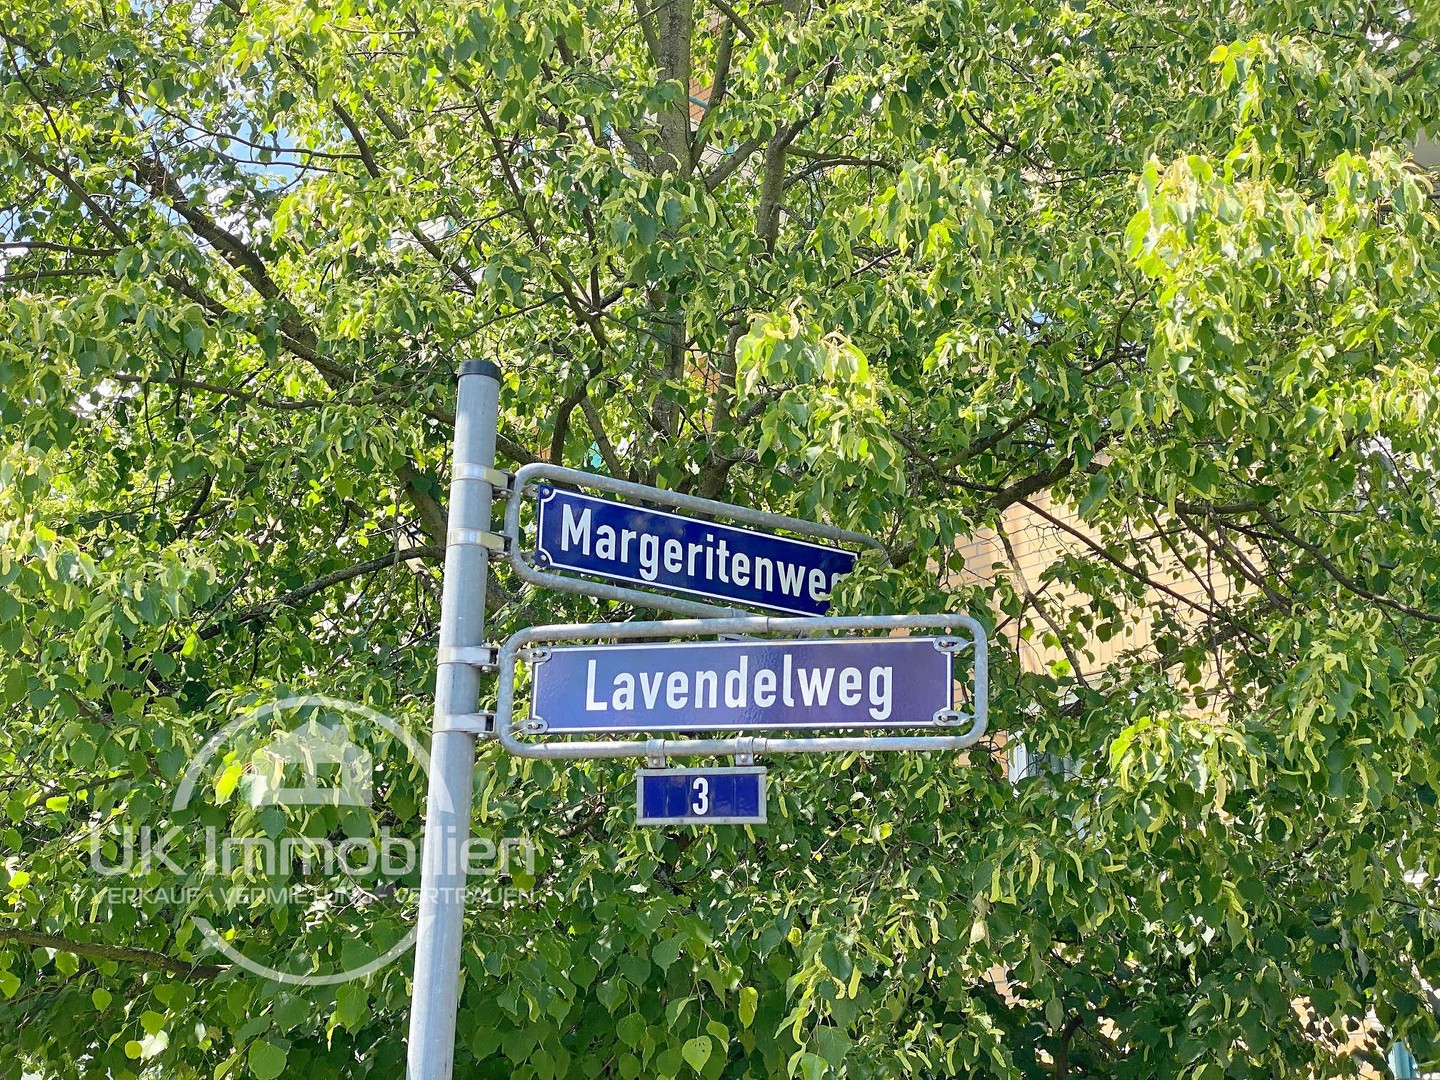 Immobilienmakler-Frankfurt-Frankurter-Berg-Lavandelweg-Margeritenweg.jpg